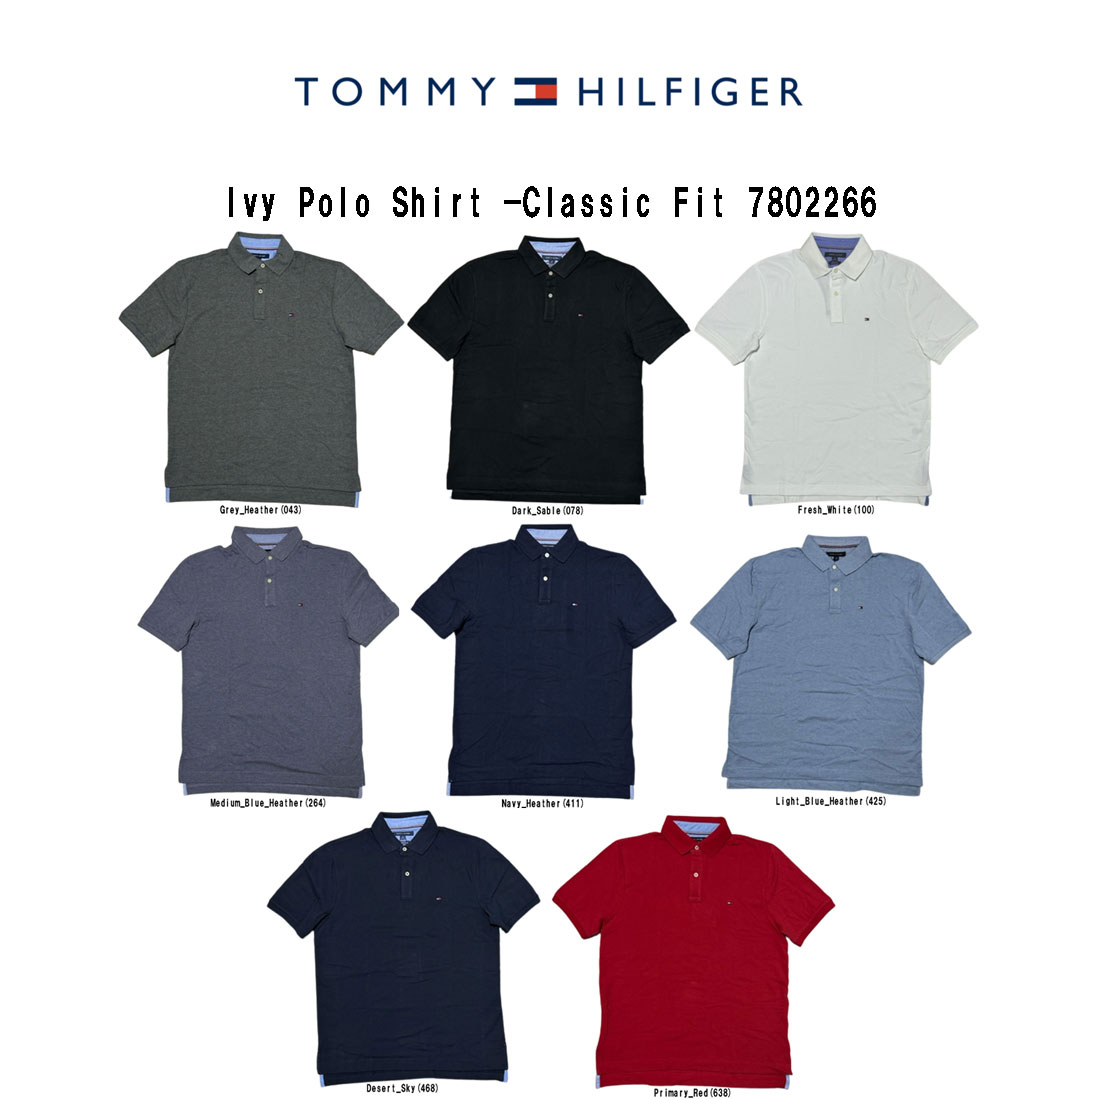 トミー ヒルフィガー ポロシャツ メンズ TOMMY HILFIGER(トミーヒルフィガー)ポロシャツ ワンポイント ロゴ 半袖 Ivy Polo Shirt -Classic Fit 7802266